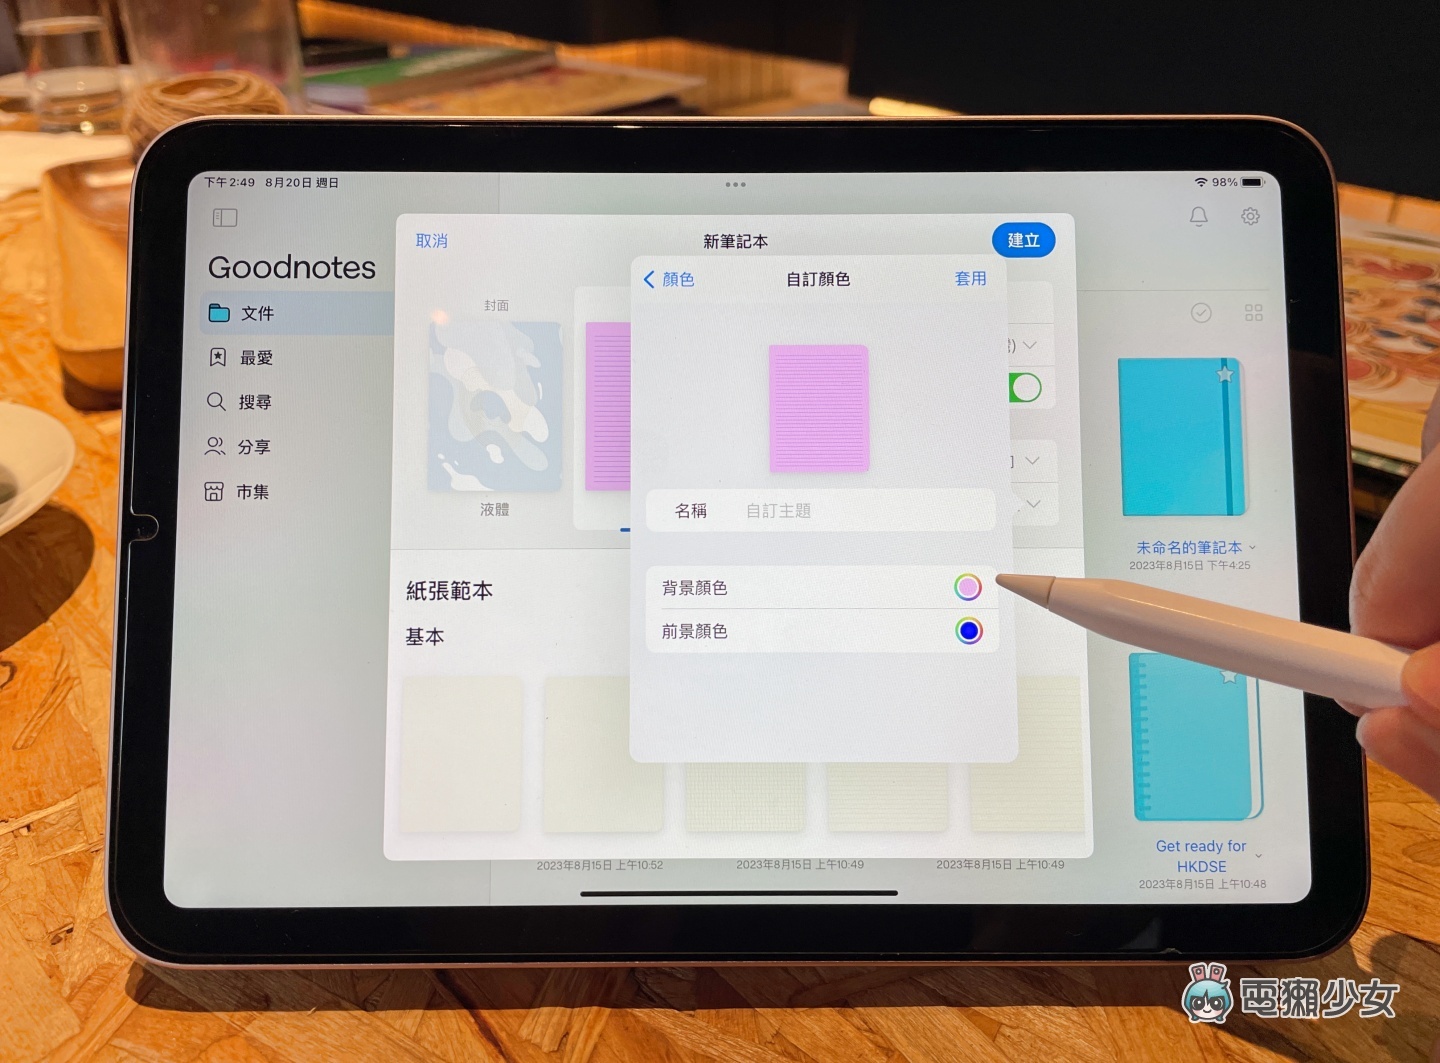 GoodNotes 6 亮點功能統整：彩色資料夾、AI 修改語句、拼寫檢查、新的畫圈套索讓筆記更順手